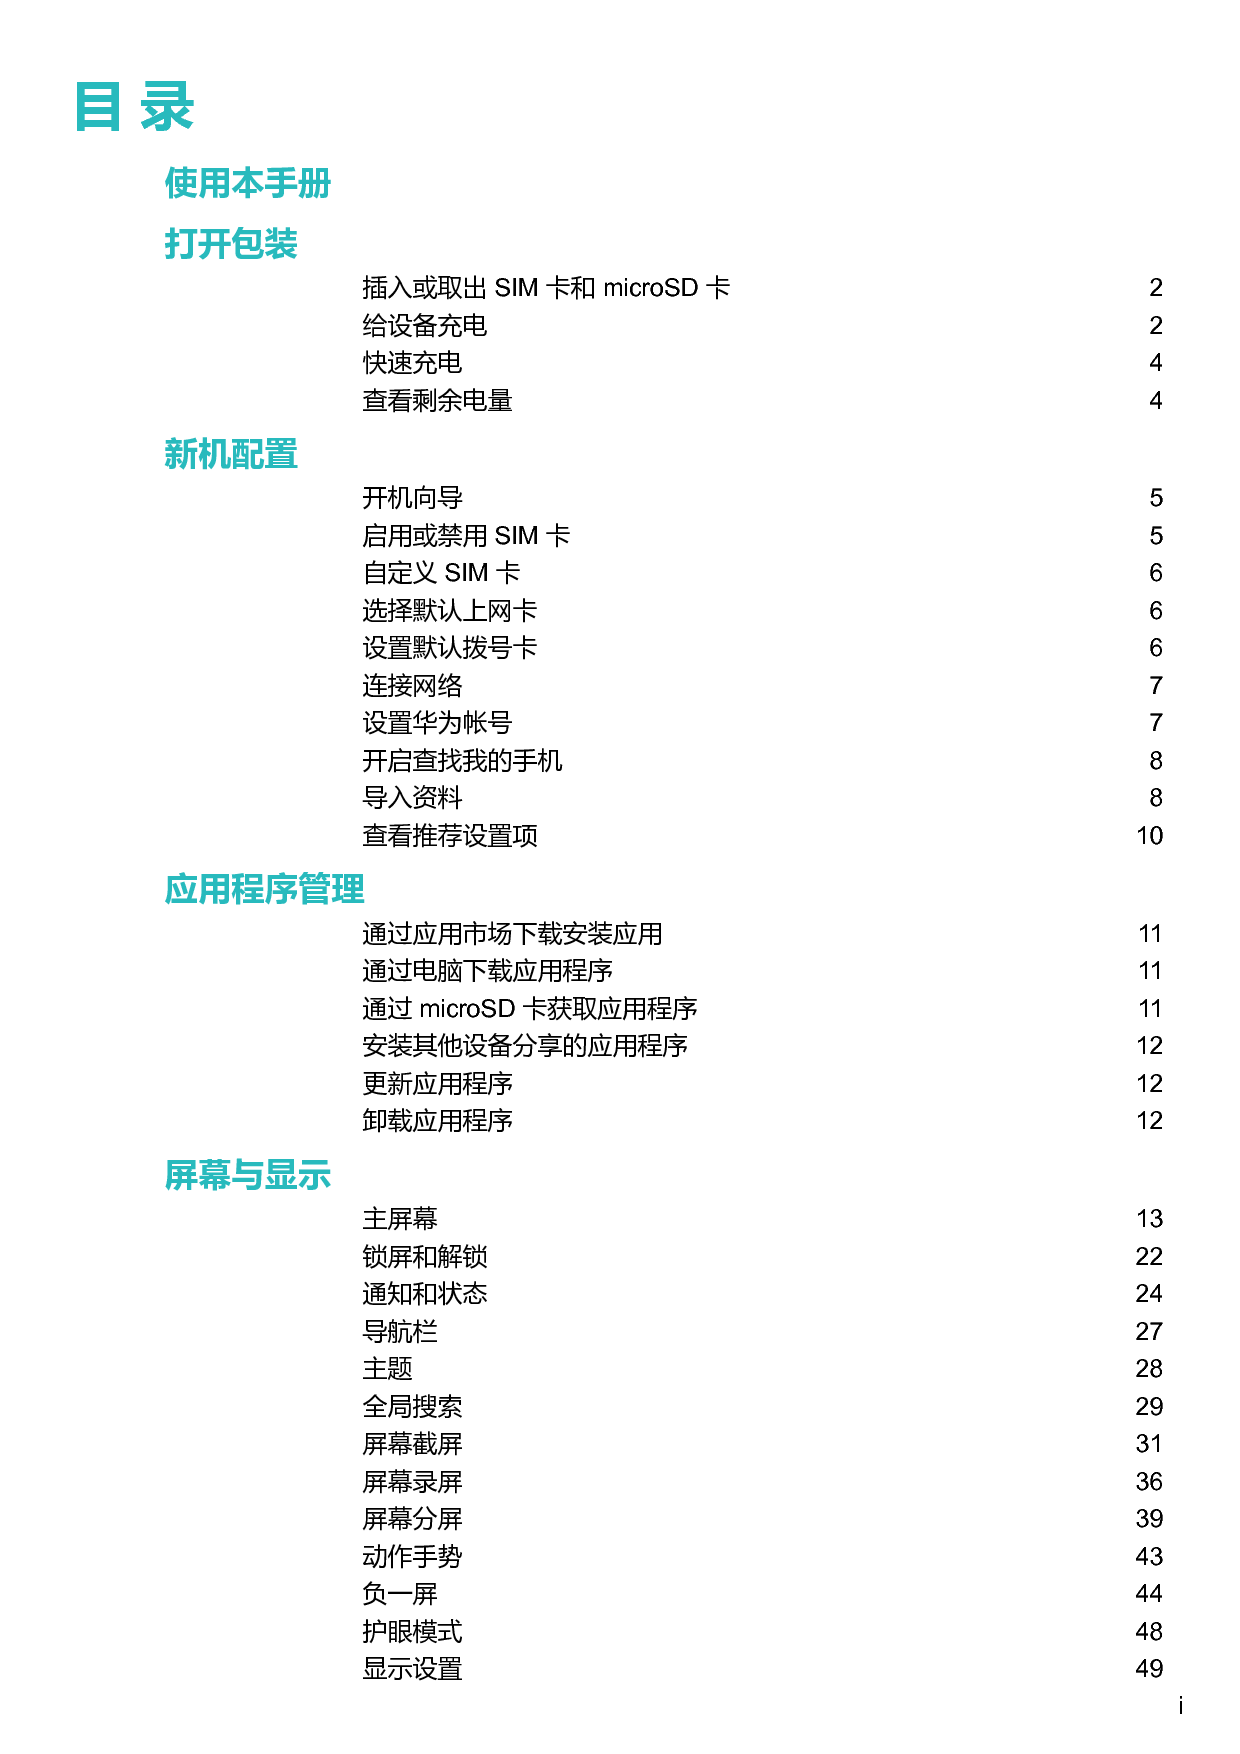 华为 Huawei P10 VTR-AL00,VTR-TL00 用户指南 第1页